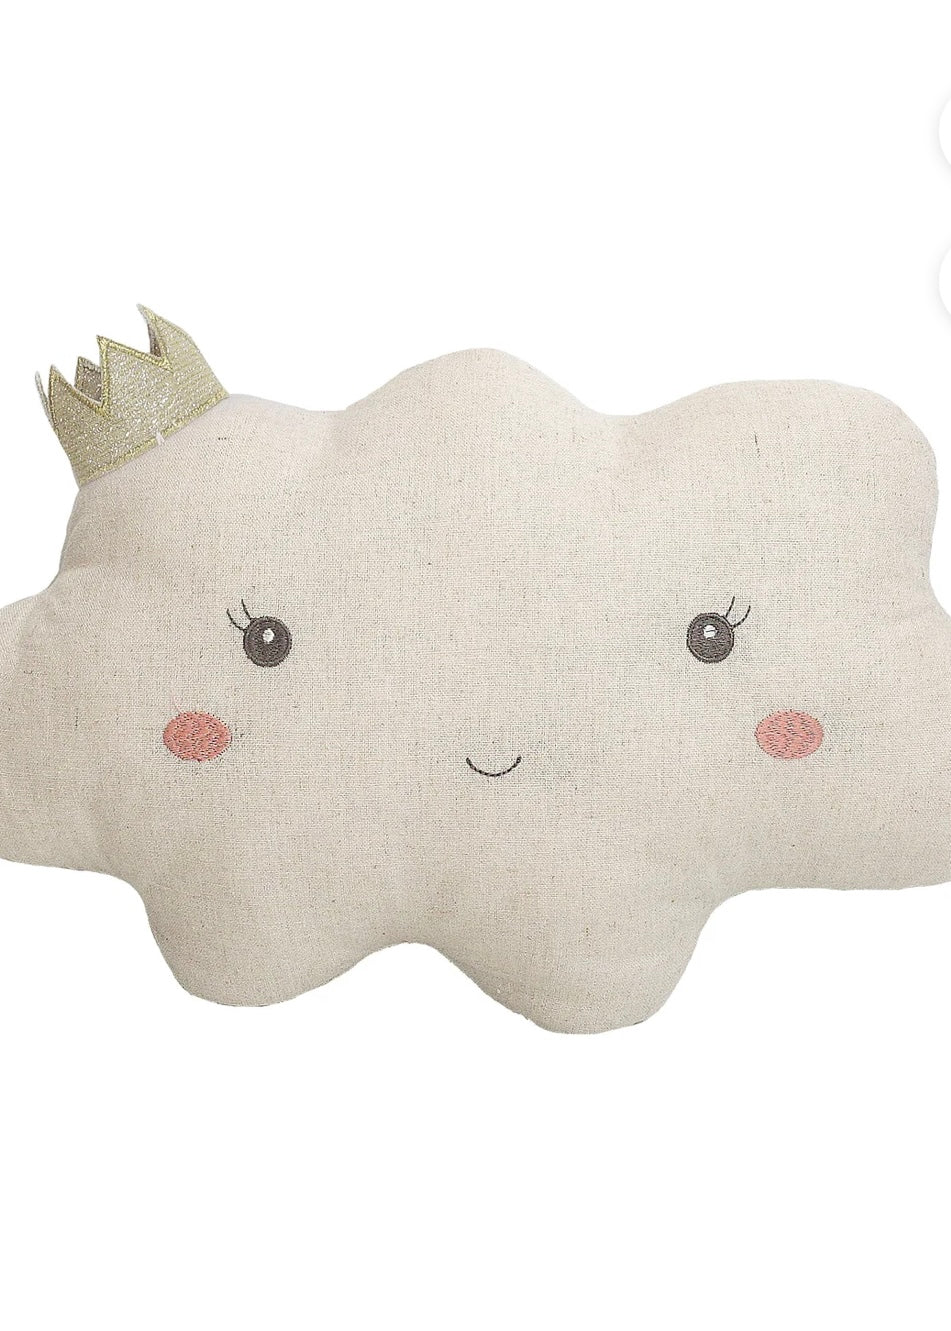 Reine cloud pillow